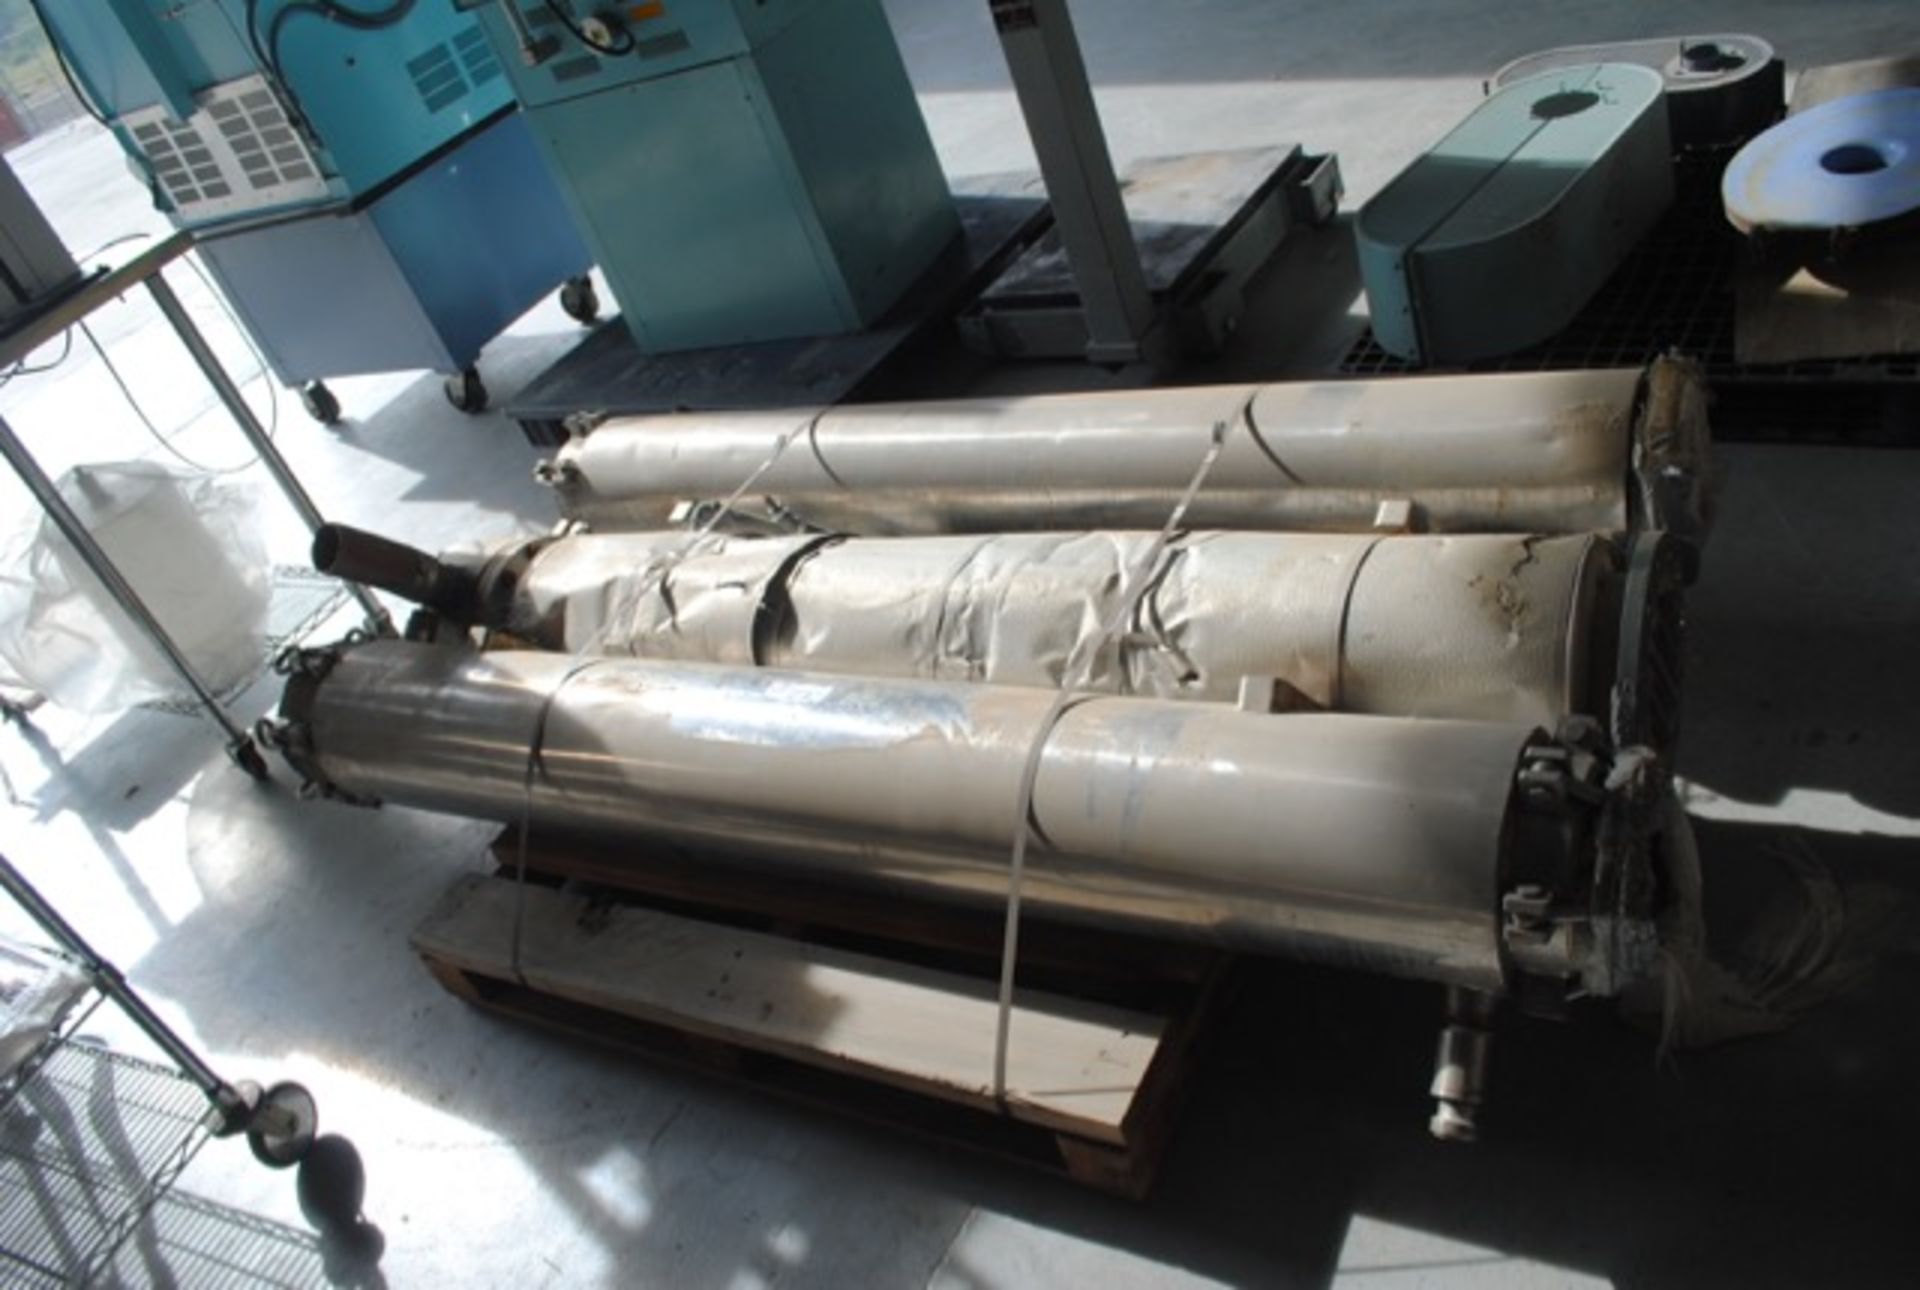 Pallet of three heat exchangers